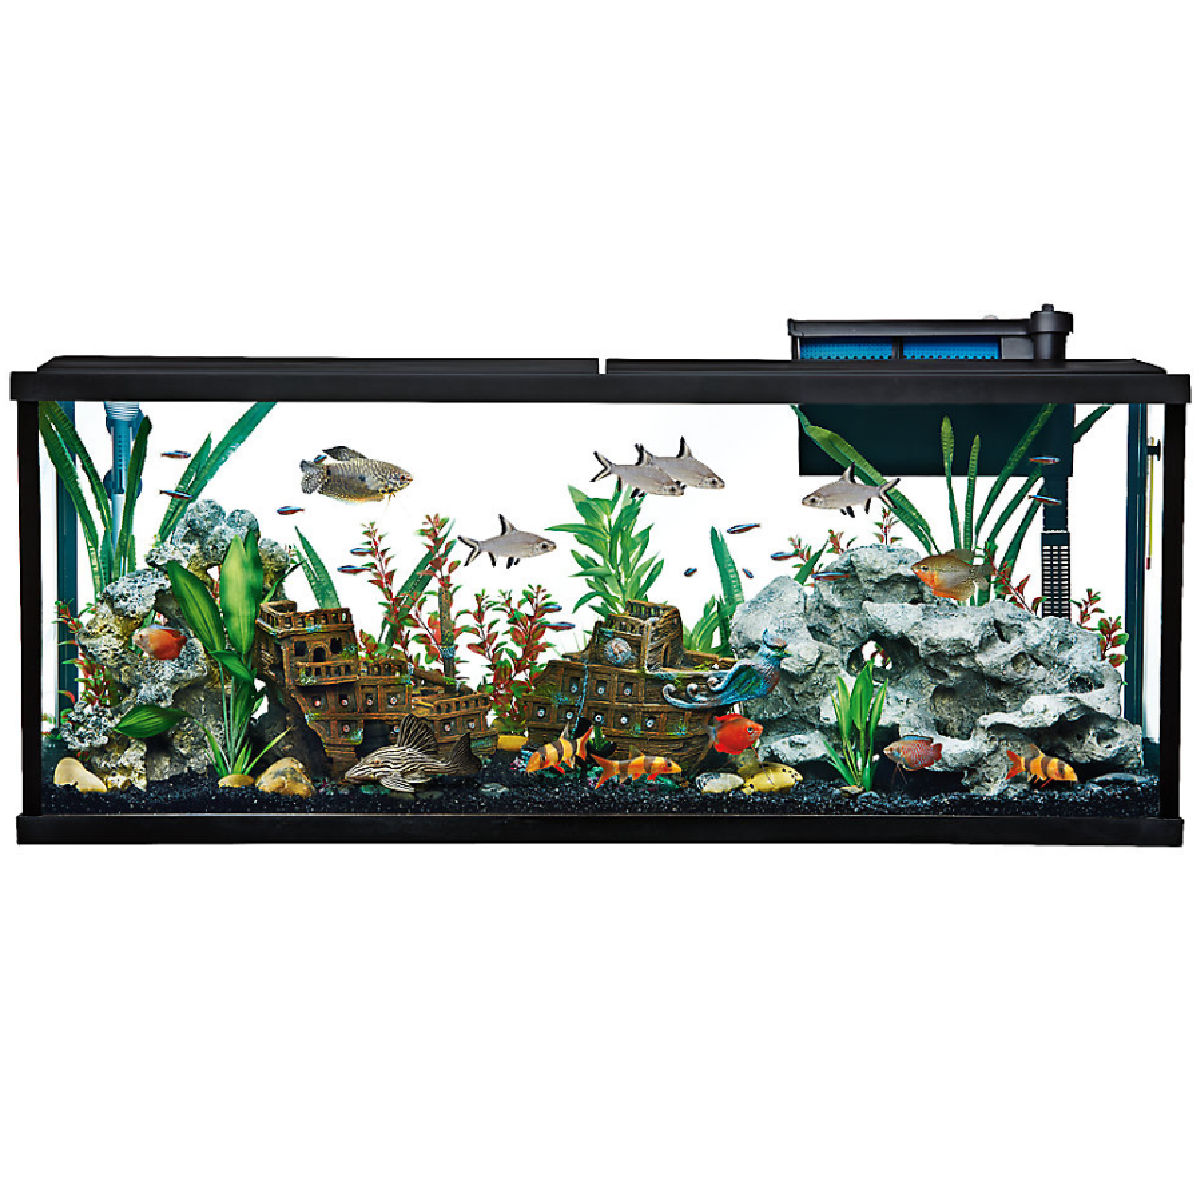 Top Fin Essentials 55-Gallon Aquarium Starter Kit